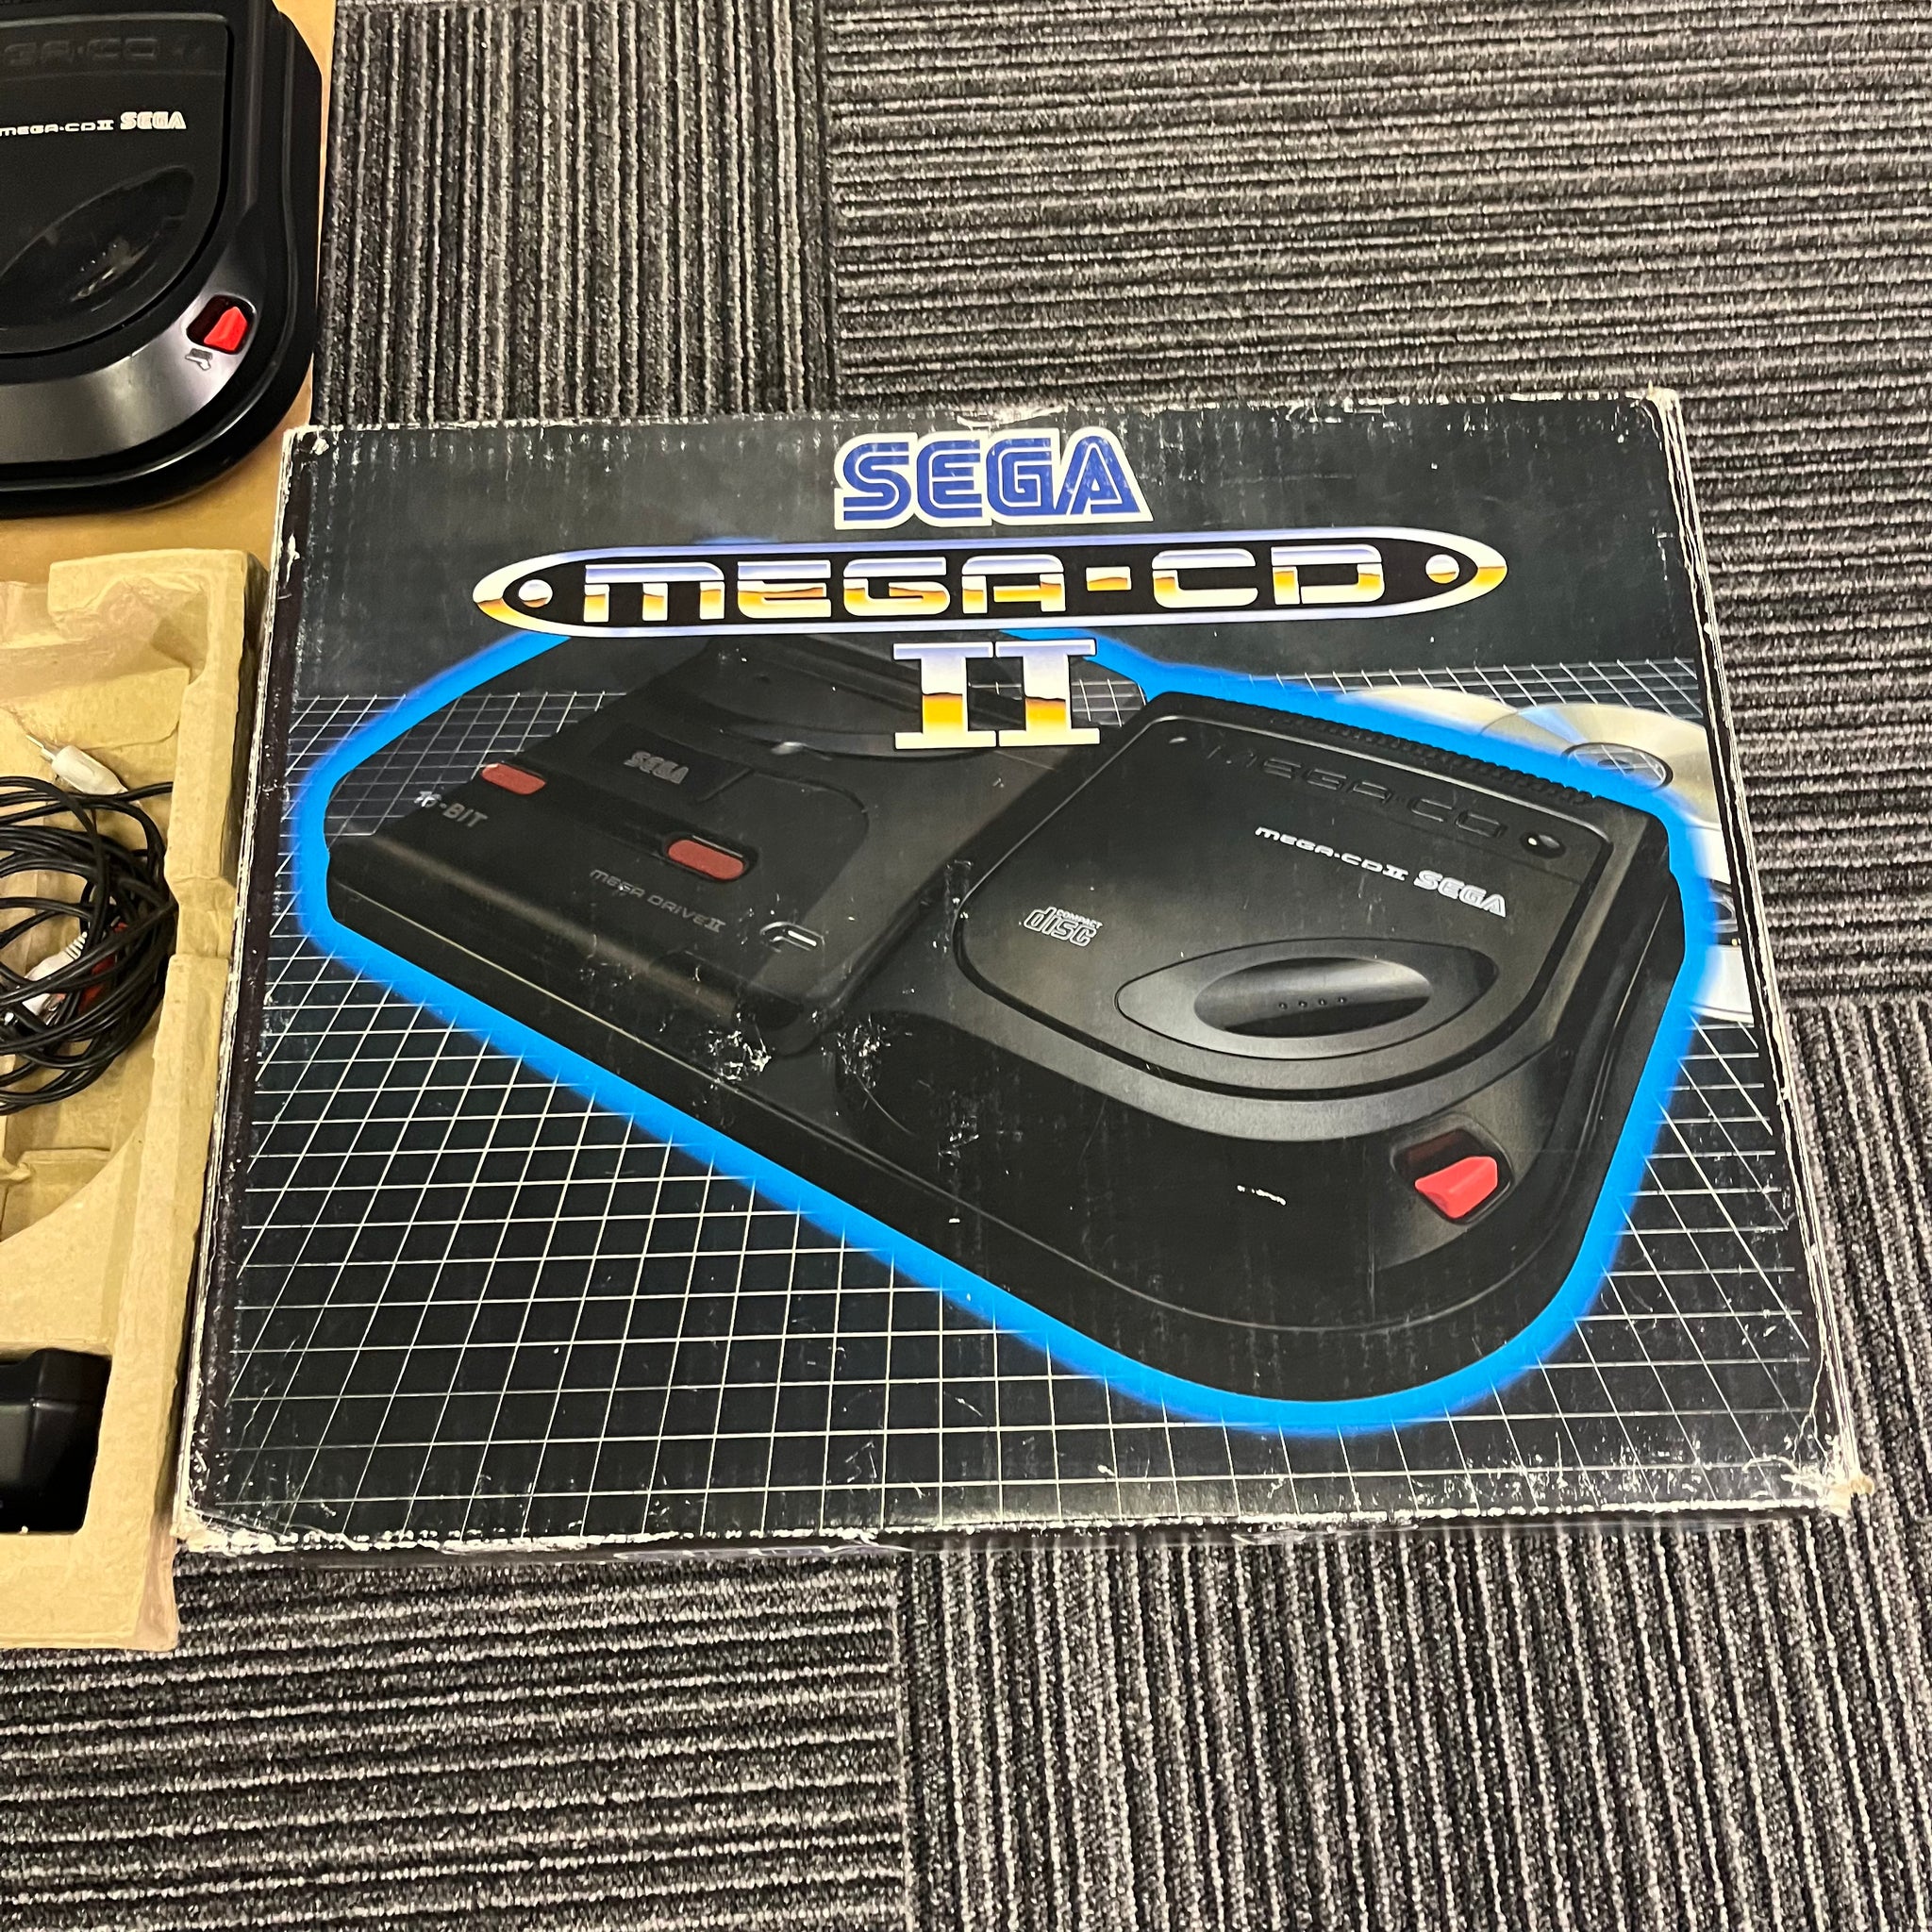 Sega Mega CD model II console boxed